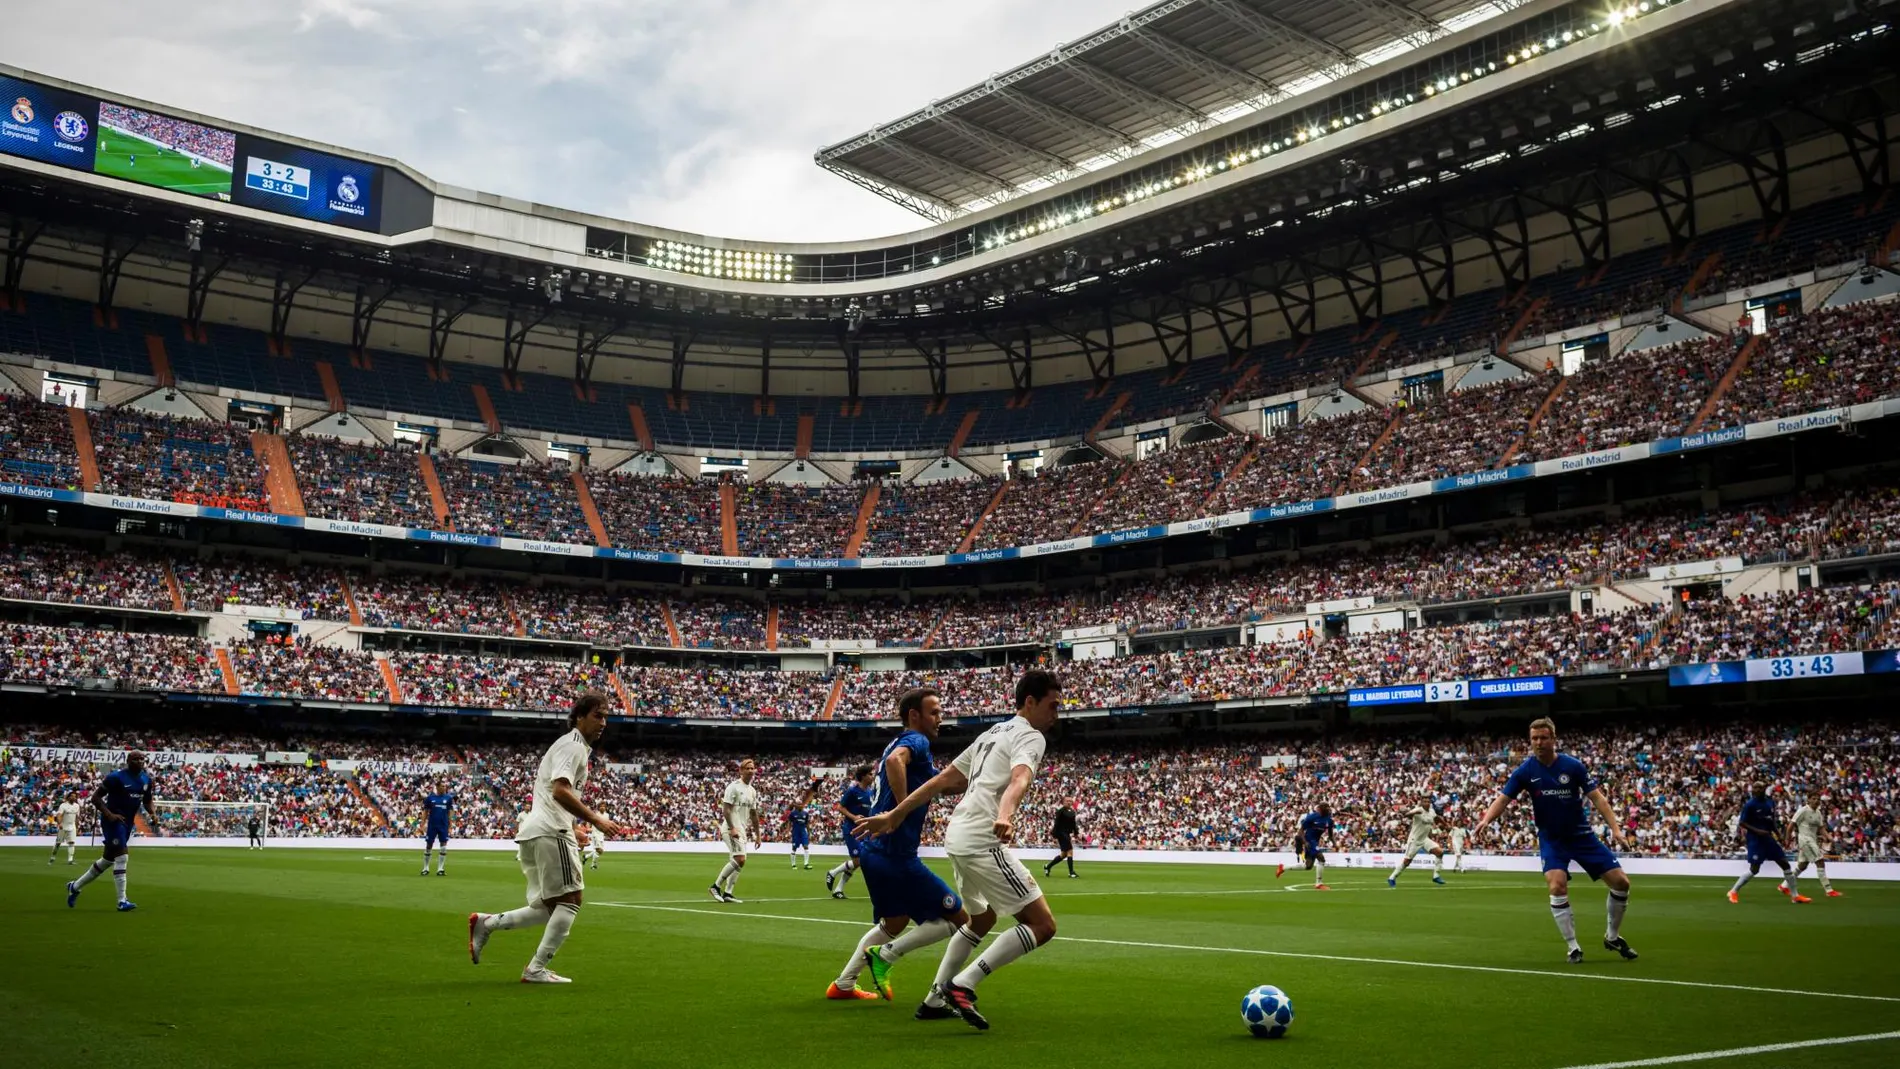 El último partido en el Bernabéu fue el Classic Match